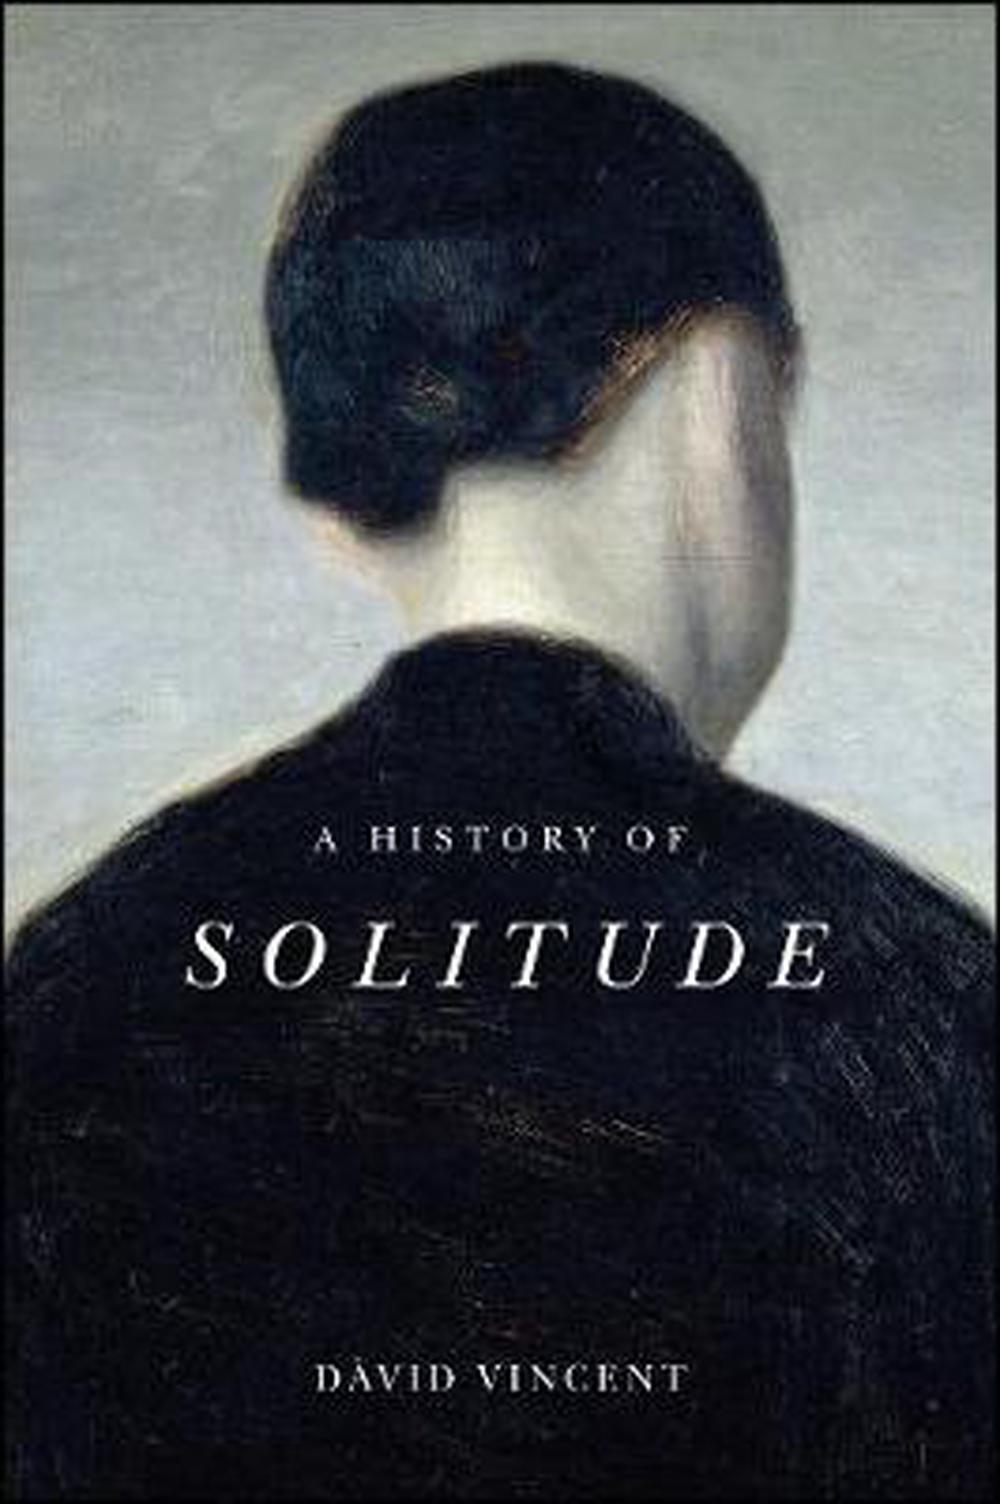 A History of Solitude ร้านหนังสือและสิ่งของ เป็นร้านหนังสือภาษาอังกฤษหายาก และร้านกาแฟ หรือ บุ๊คคาเฟ่ ตั้งอยู่สุขุมวิท กรุงเทพ